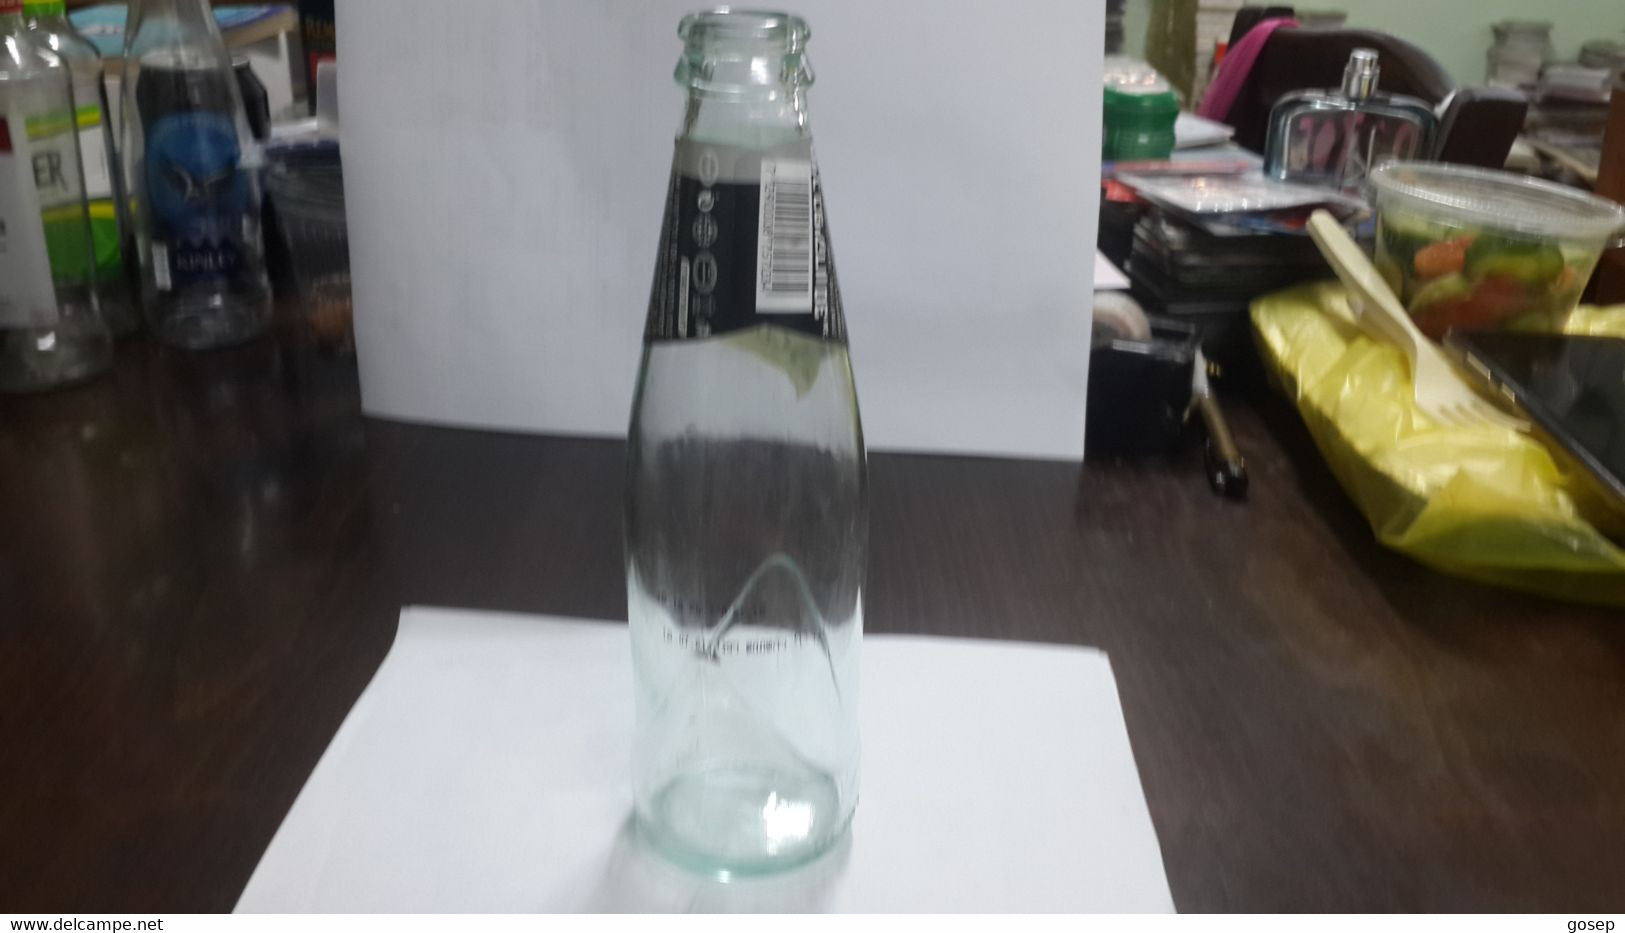 Israel-soda Bottle-schweppes-(100ml)-yafora-tavori Ltd - Limonade